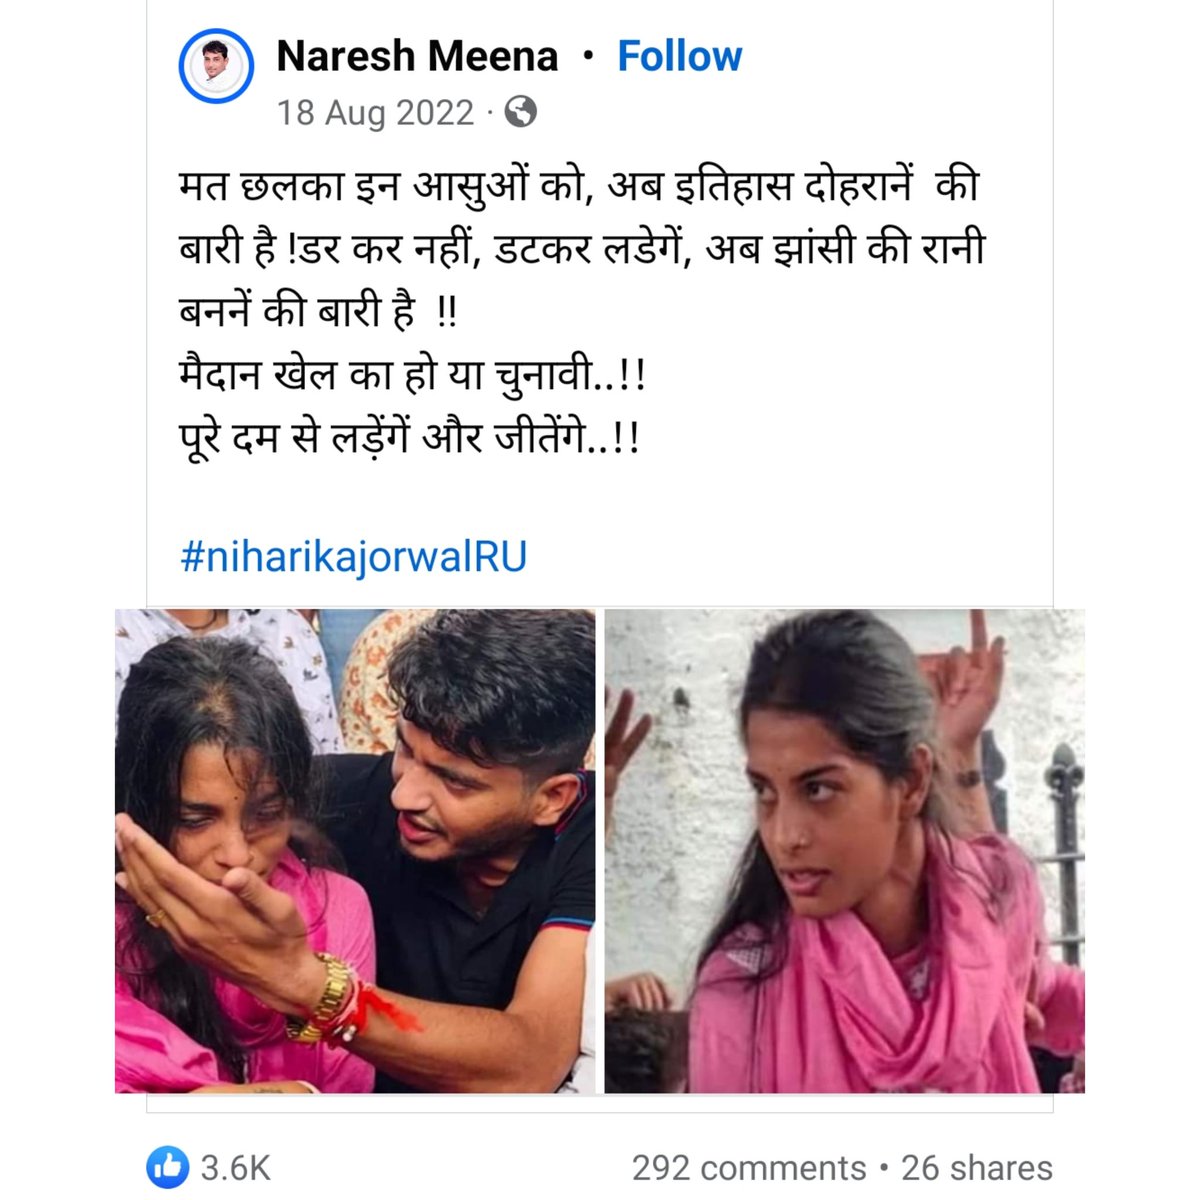 राजस्थान यूनिवर्सिटी चुनाव के दौरान नरेश मीणा मुरारीलाल की बेटी निहारिका में झांसी की रानी दिखती थी। नरेश मंत्री पुत्री निहारिका से राखी बंधवा चुका है। सोशलमीडिया लाइव में 10 लाख रुपये की बात कह चुका है।

और आज अपनी उसी राखी बहन के लिए कह रहा है वो विधायक बनेगी तो हम क्या बनेंगे